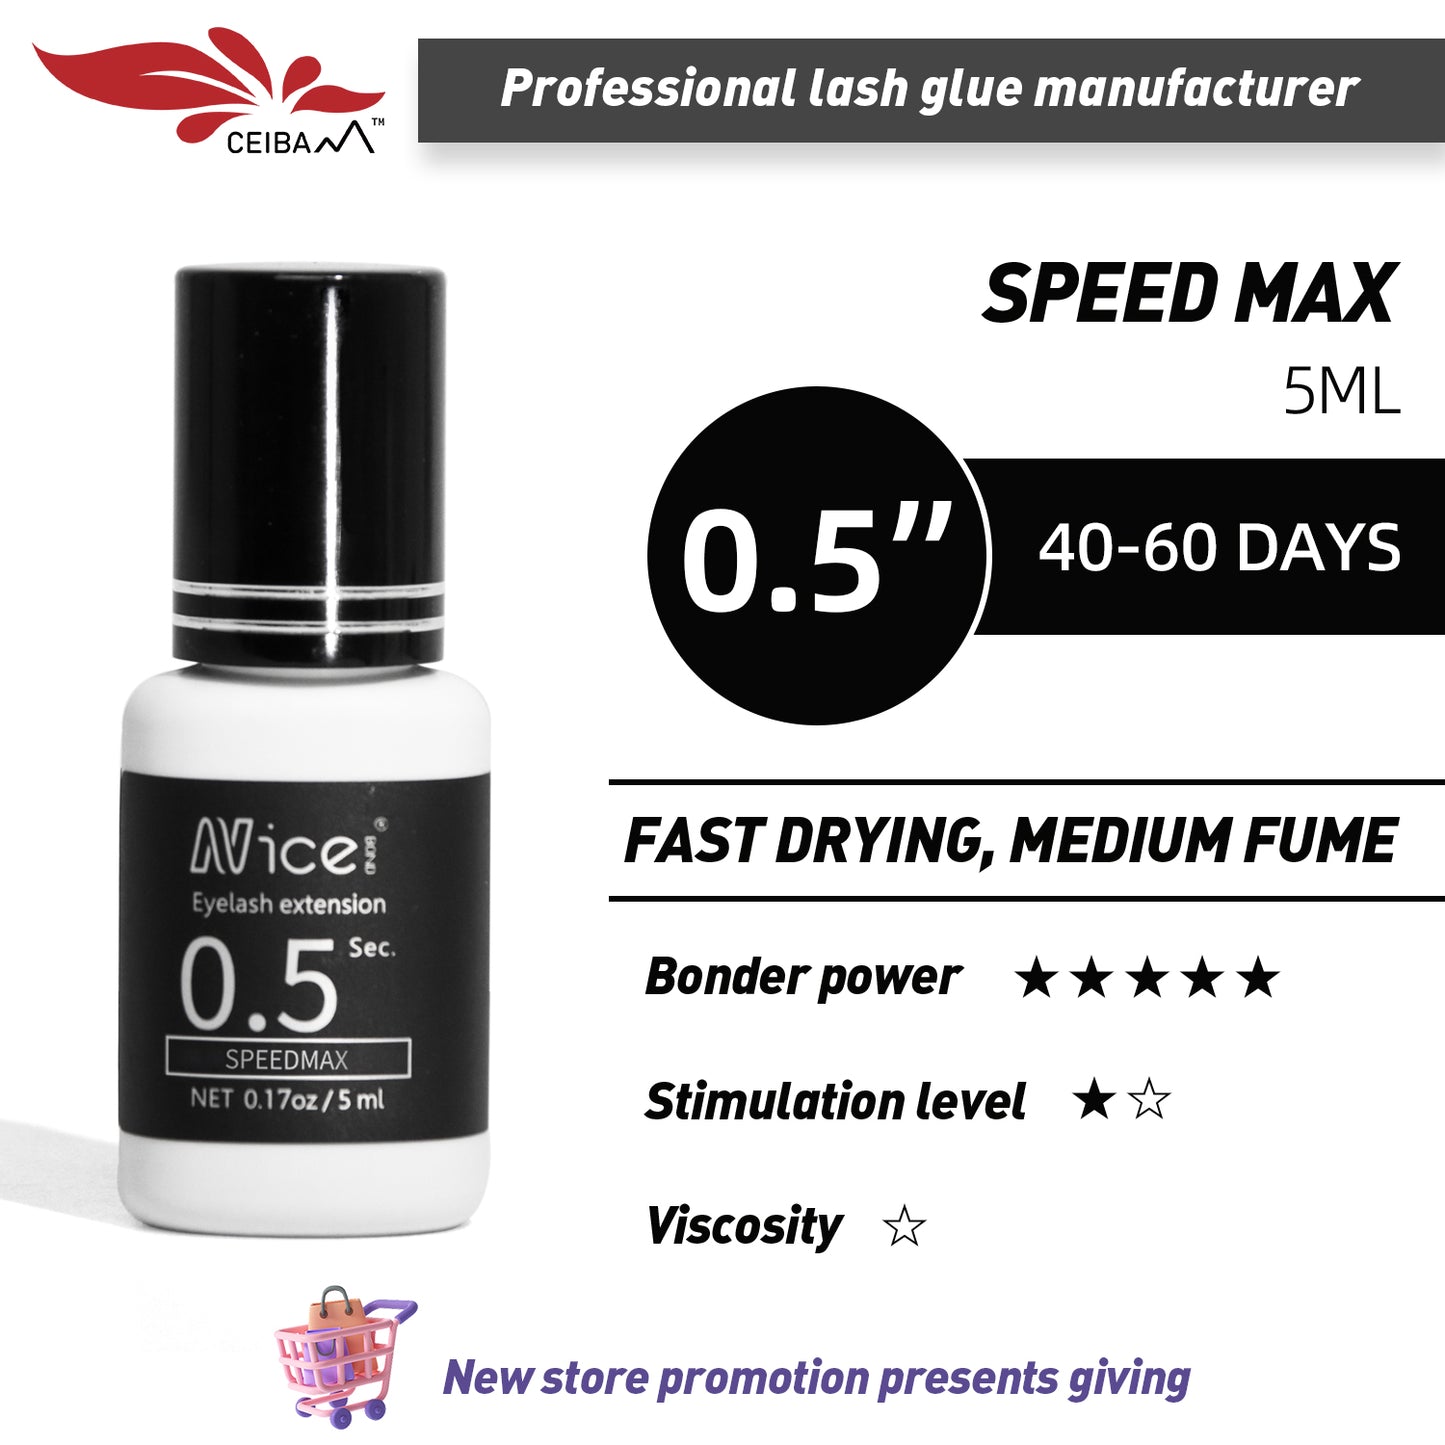 NICE BOND Speed Max 0.5 Sec Semi-permanent Lash Glue